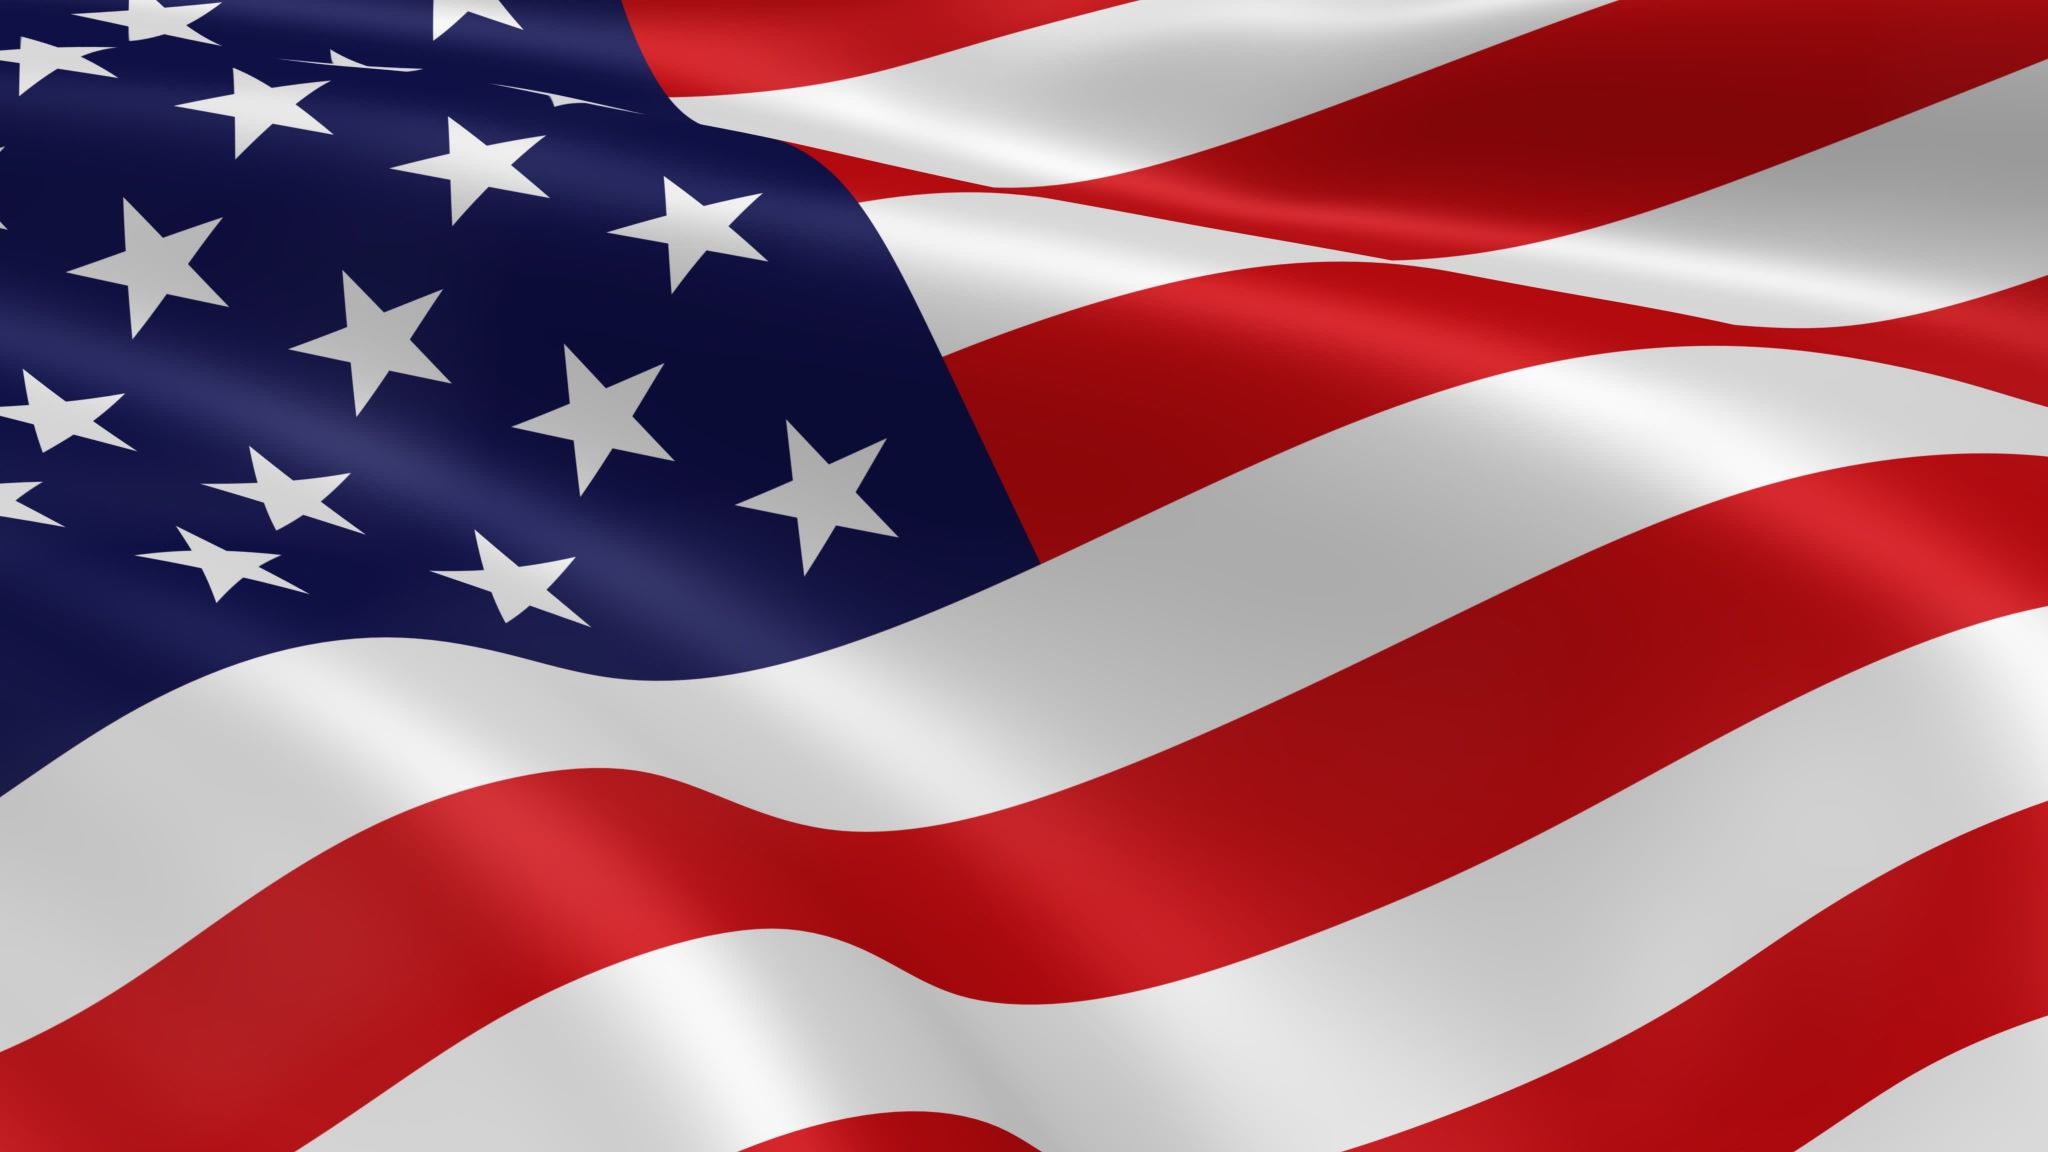 american flag desktop wallpaper HD pics. American flag wallpaper